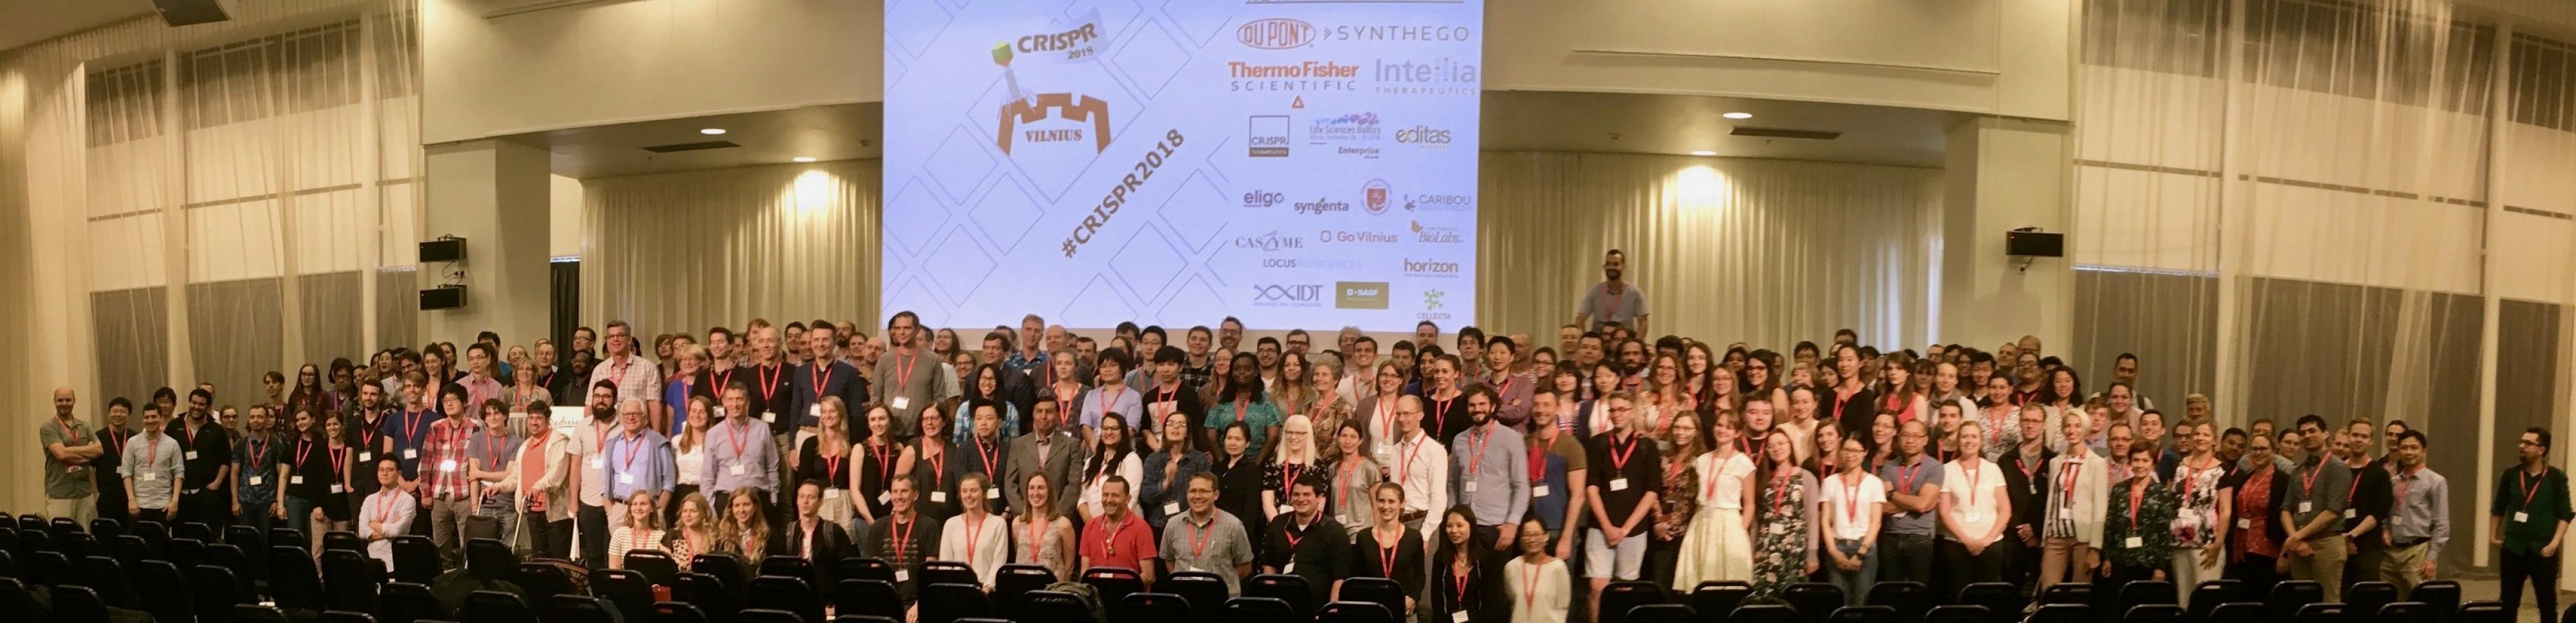 Gruppenbild der Teilnehmer der zehnten CRISPR-Konferenz in Vilnius, Litauen, 22. Juni 2018.